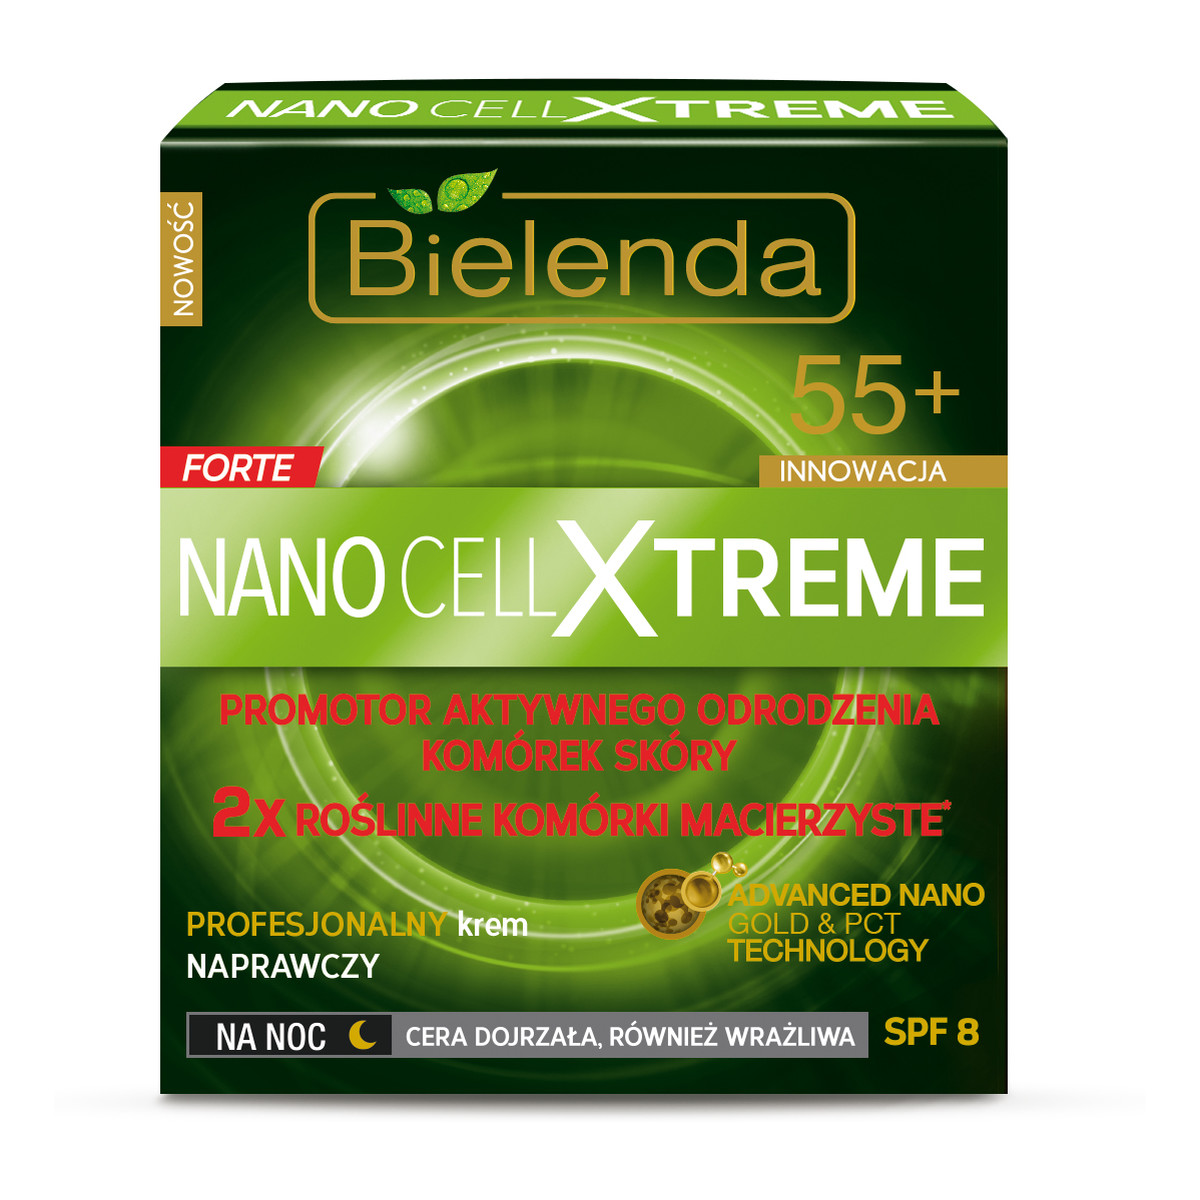 Bielenda Forte Nano Cell Xtreme 55+ Profesjonalny Krem Naprawczy Na Noc 50ml